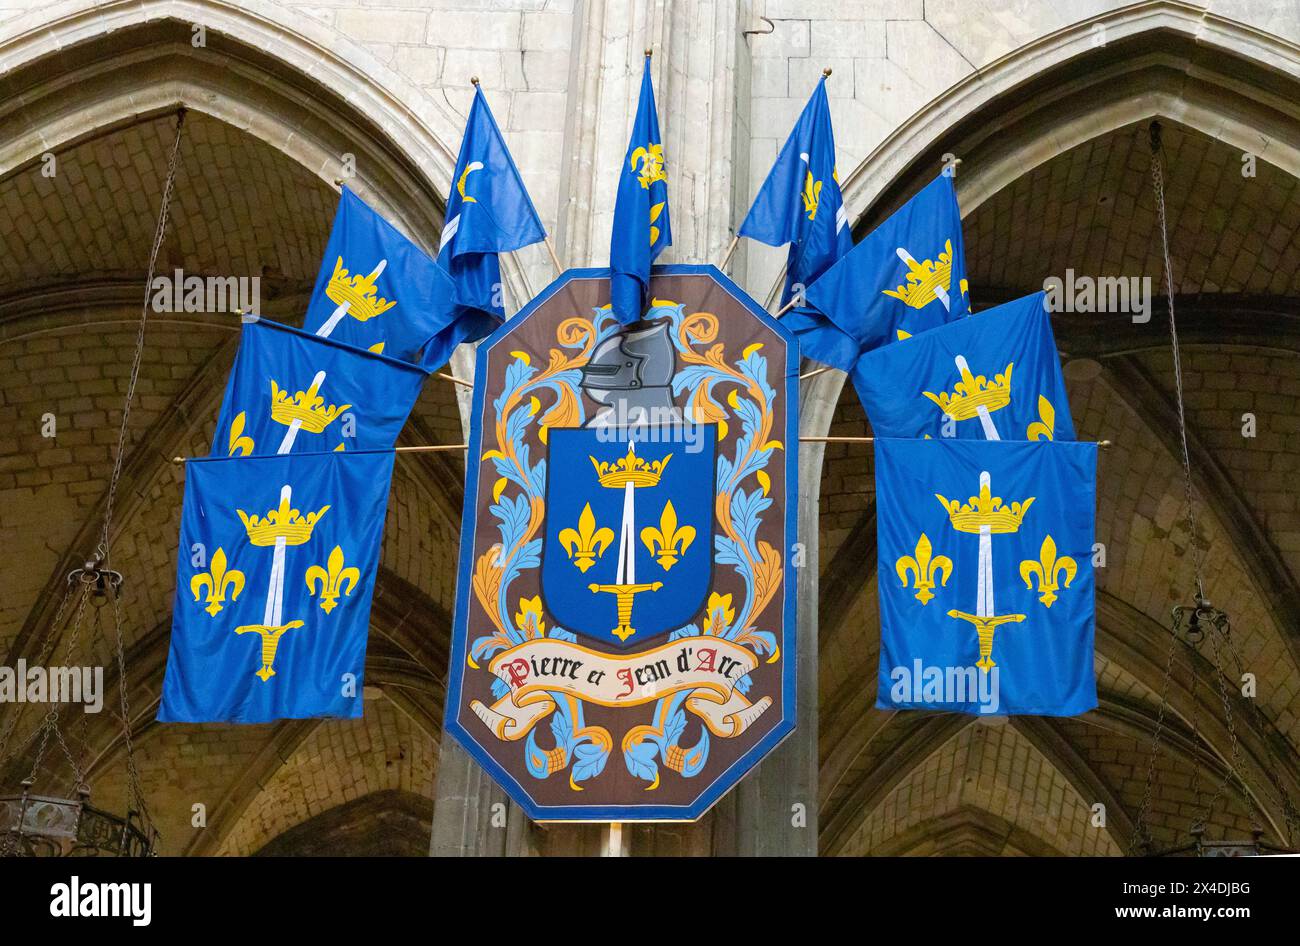 Gli striscioni simboleggiano la nobiltà francese anche se lo striscione centrale parla al vescovo responsabile dell'incendio di Giovanna d'Arco sul rogo. Foto Stock